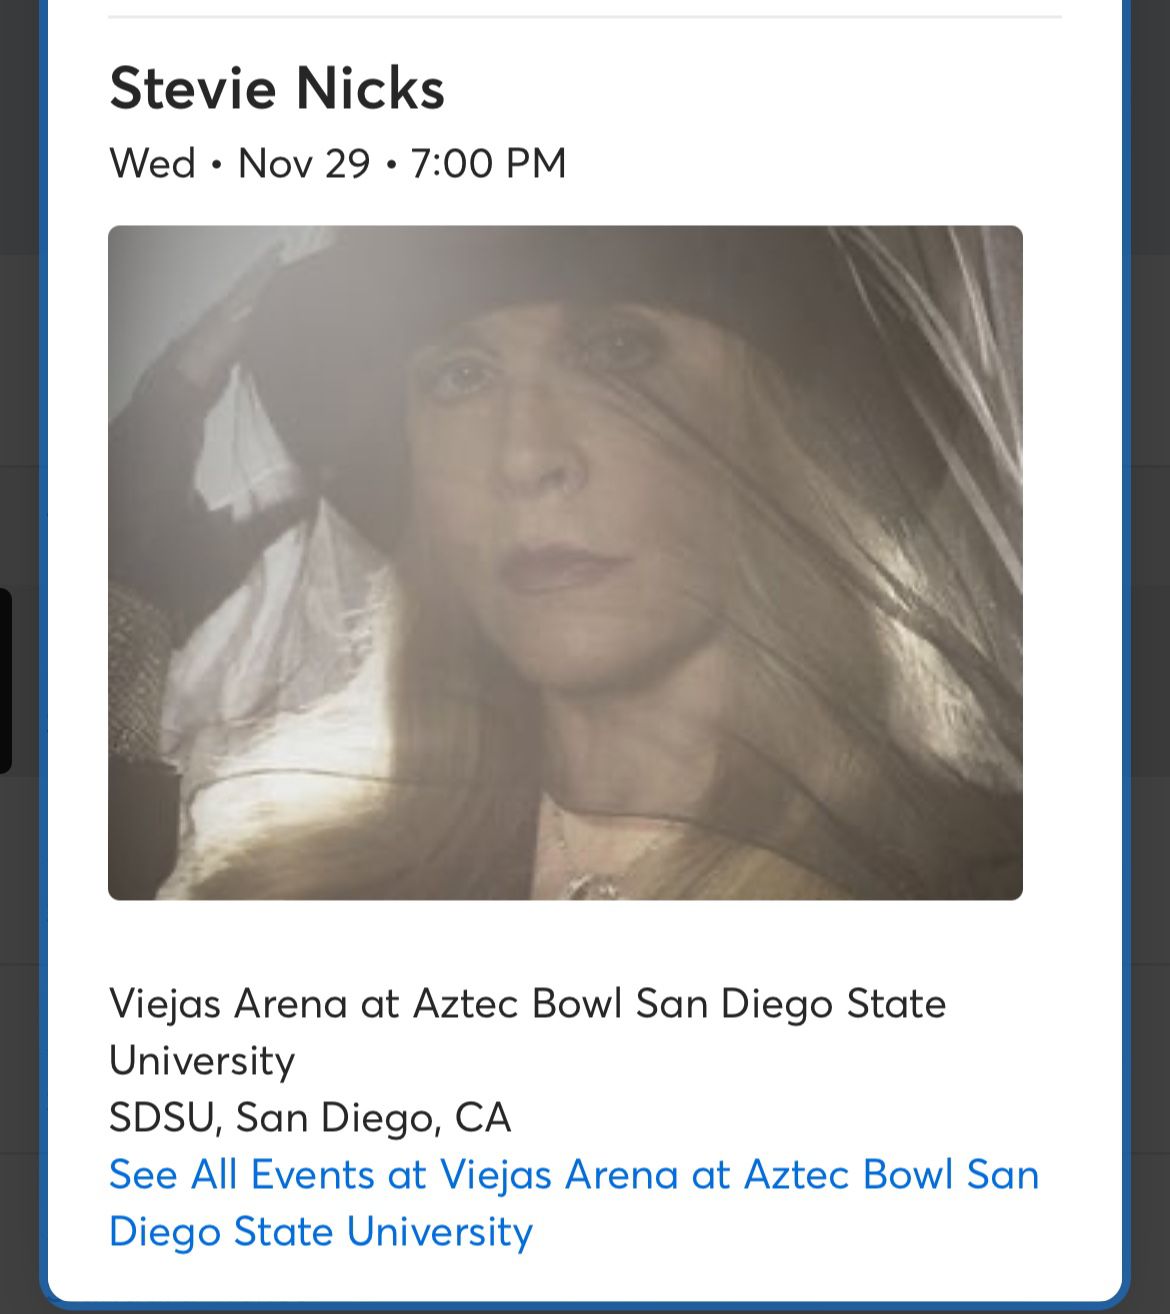 Stevie Nicks At Viejas arena Tonight